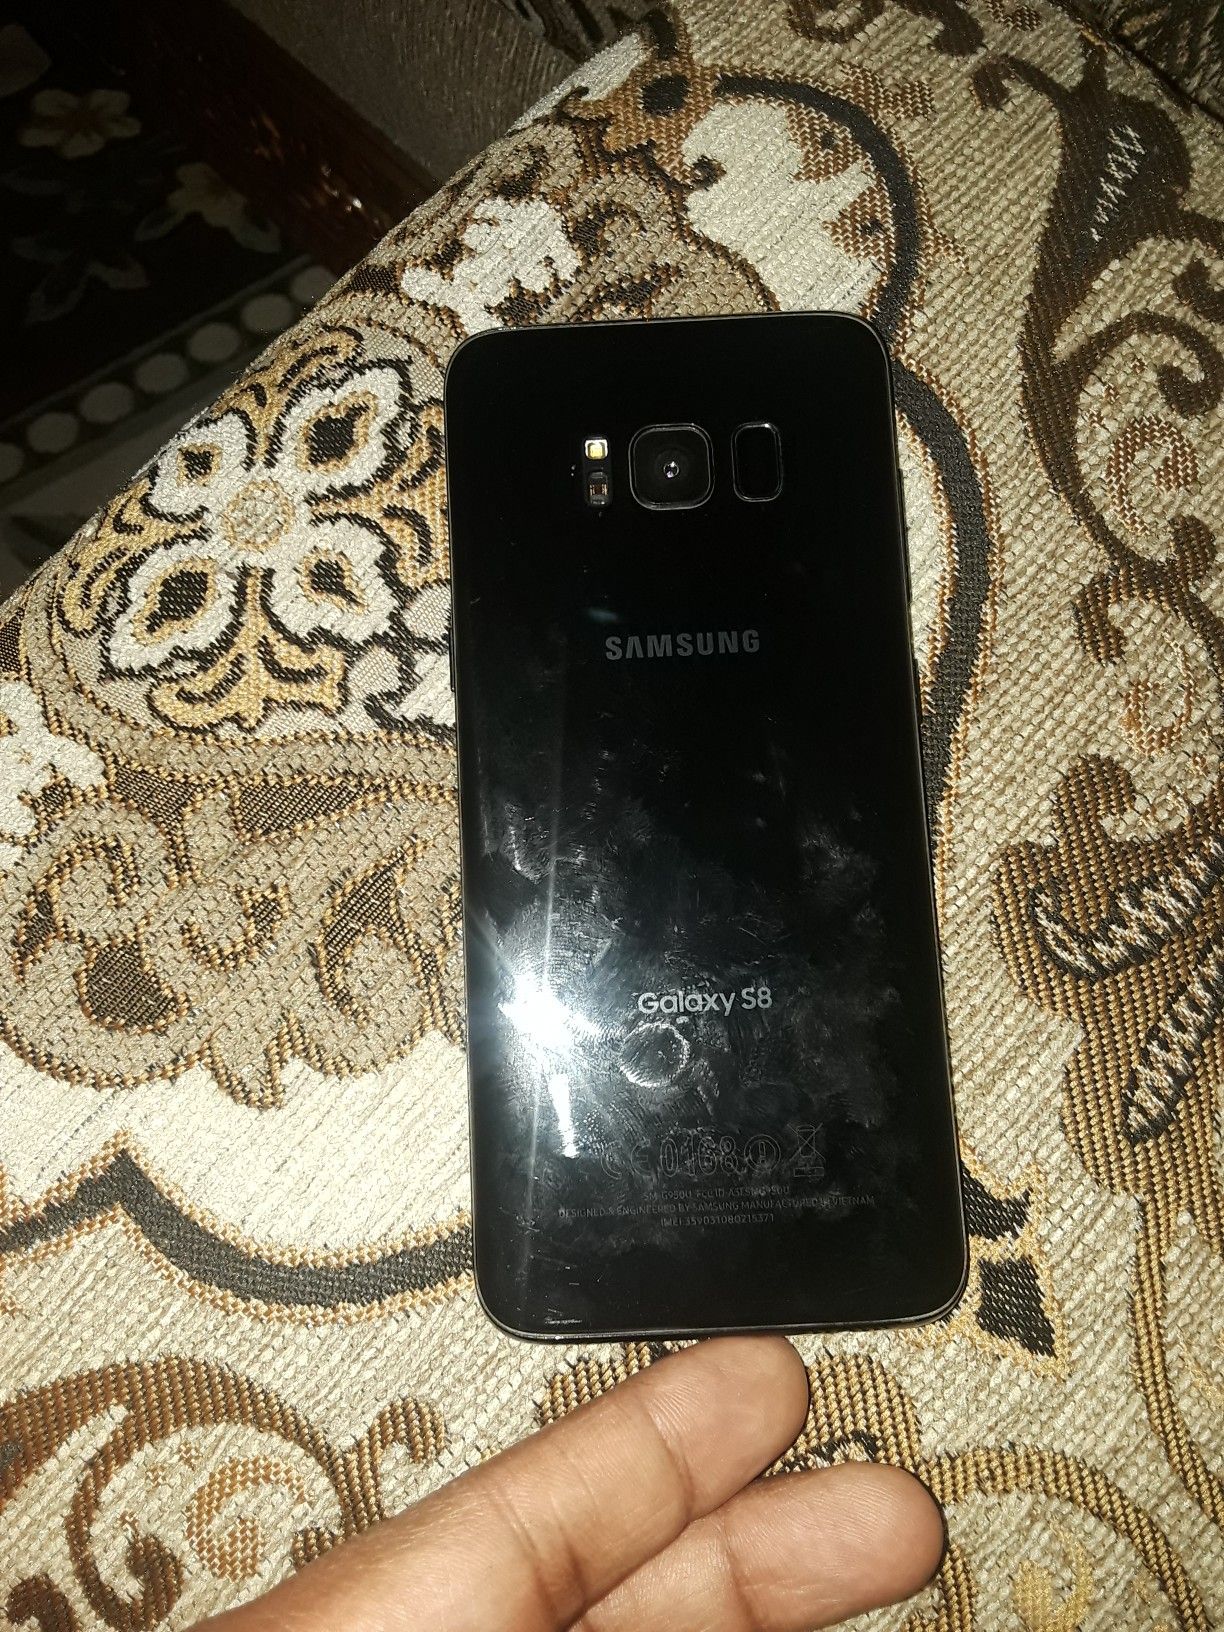 Samsung Galaxy s8 unlocked.